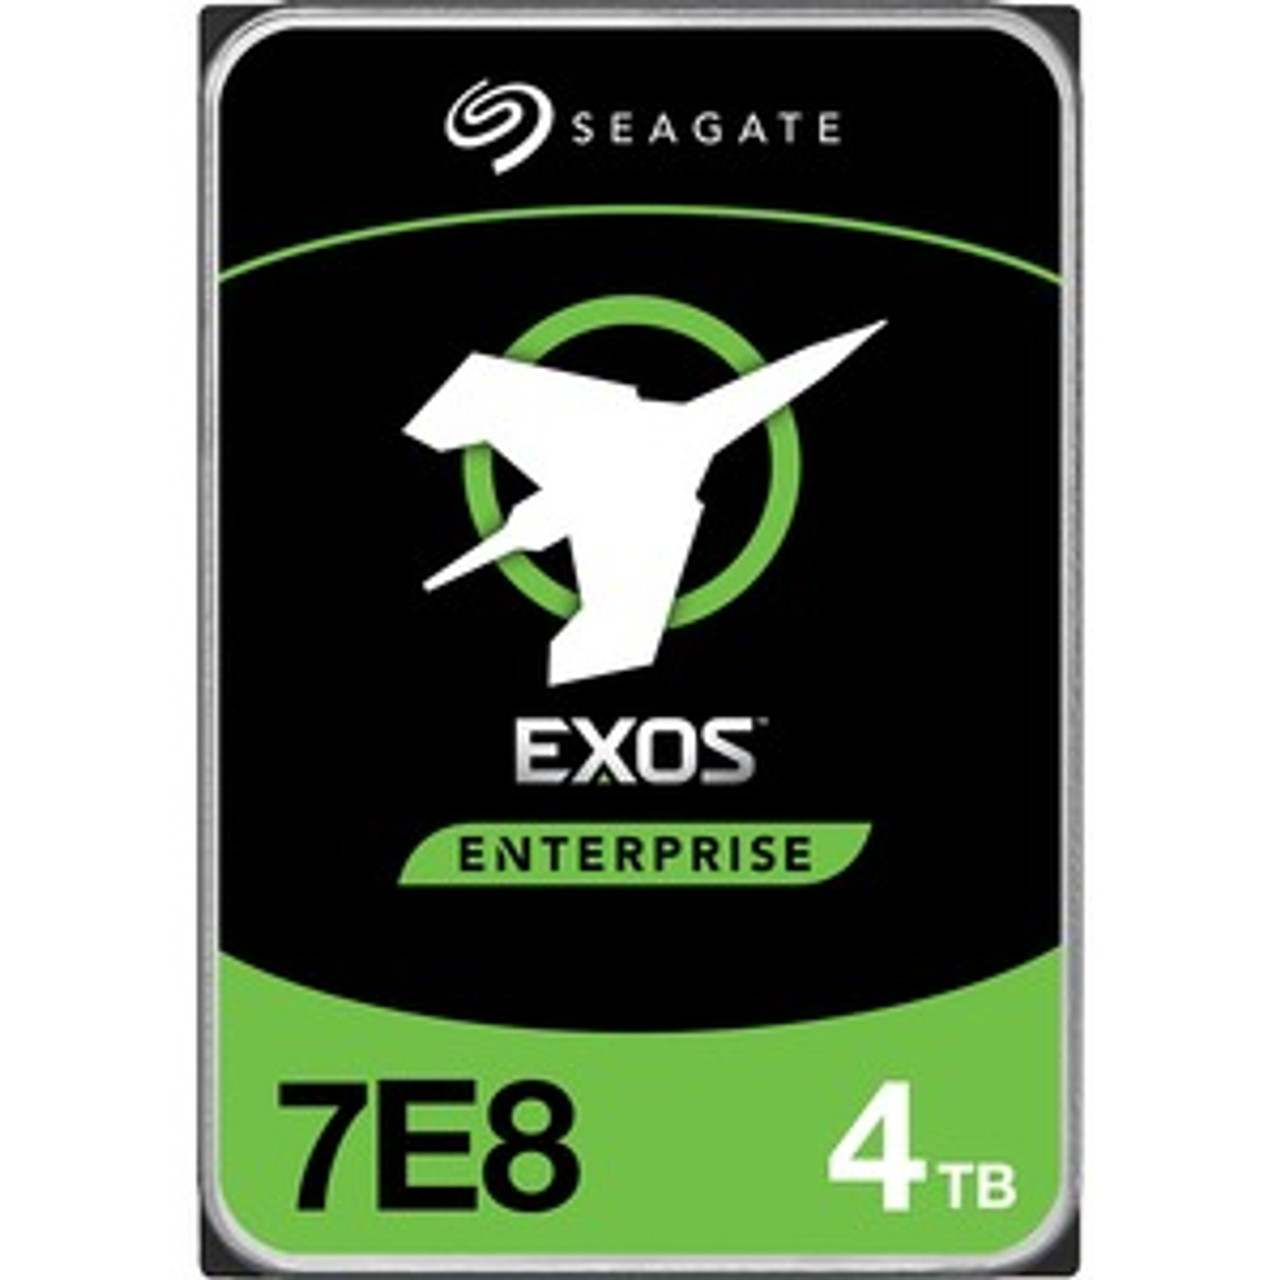 Seagate Exos 7E8 4TB 7200RPM SAS 12Gbps 256MB Cache (SED / 512n) 3.5-inch Internal Hard Drive (20-Pack) Mfr P/N ST4000NM007A-20PK